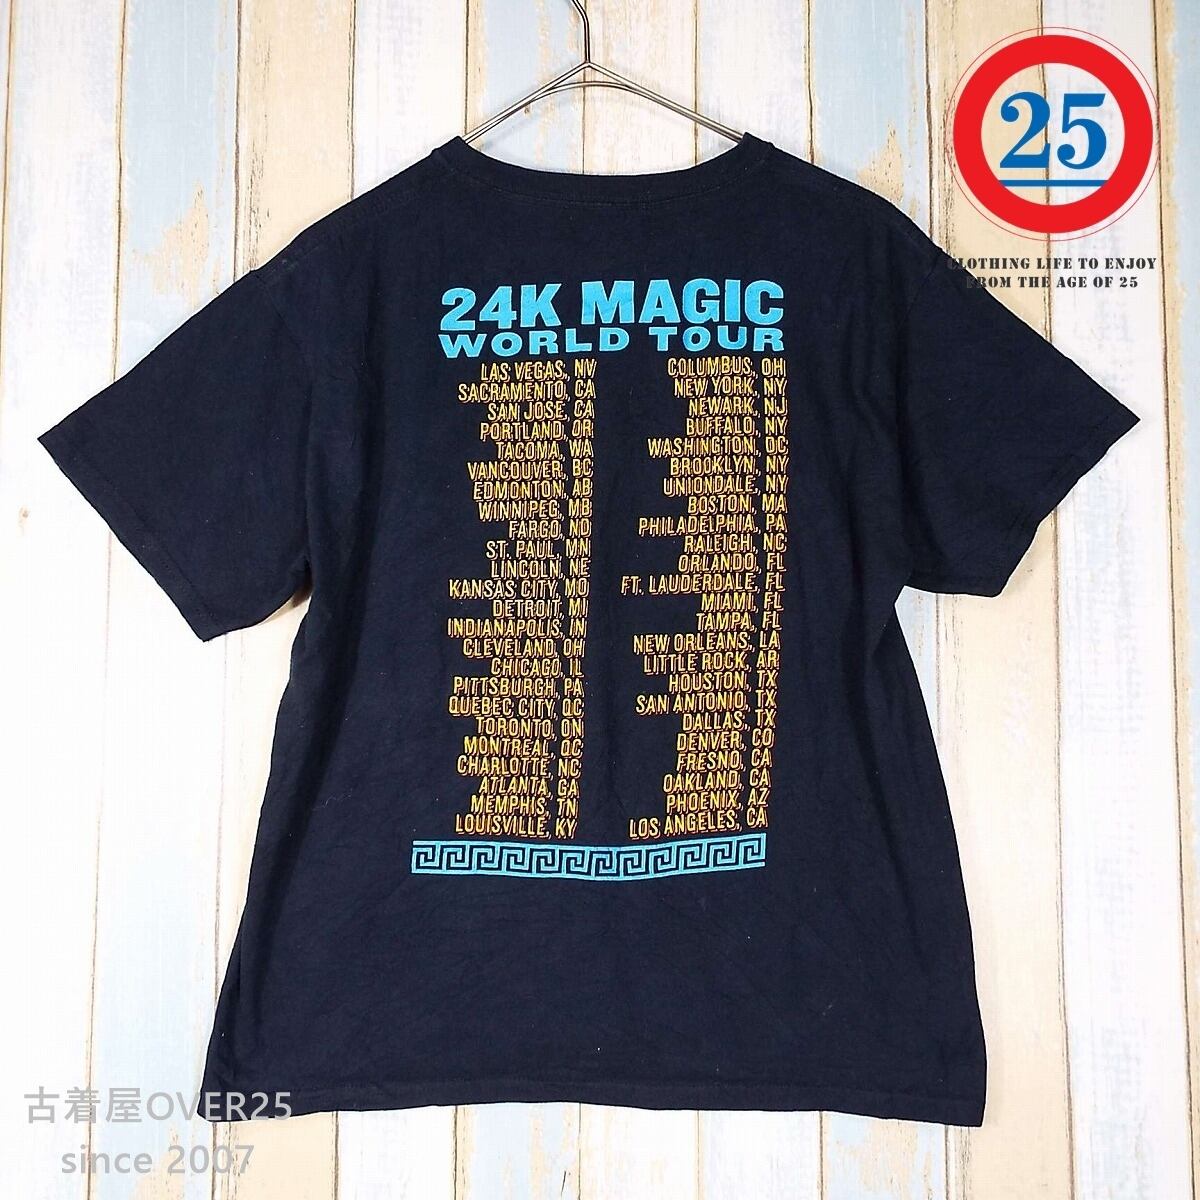 ブルーノマーズ （タオルおまけ）ジャパンツアー2022 記念Tシャツ Mサイズ